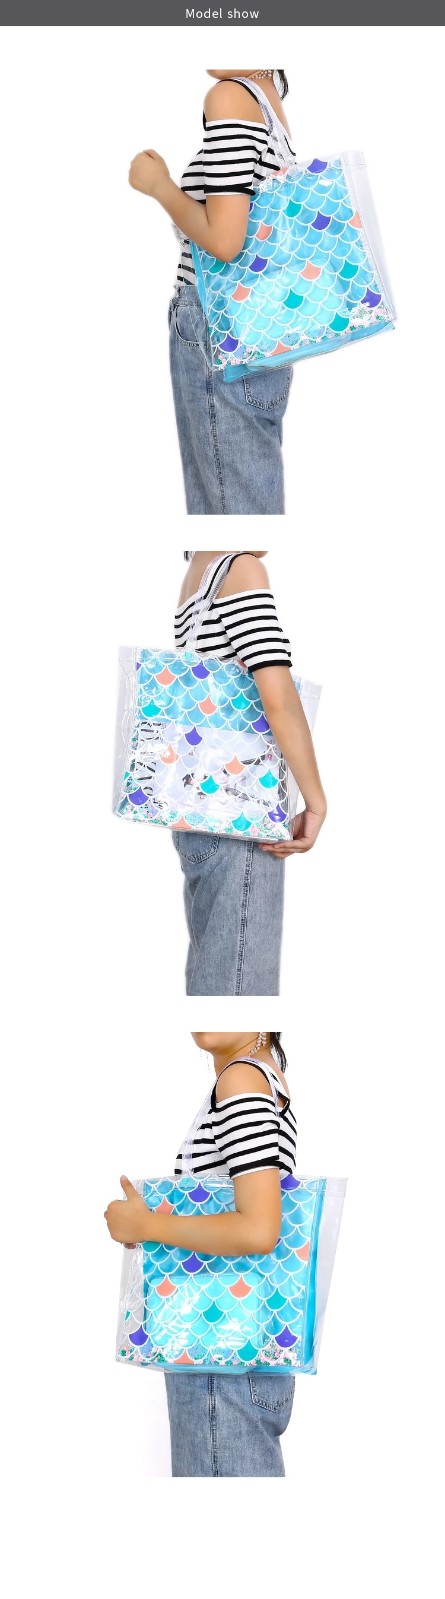 Transparent PVC Beach Bag Ladies Laminated Sequins Waterproof Tote Bag